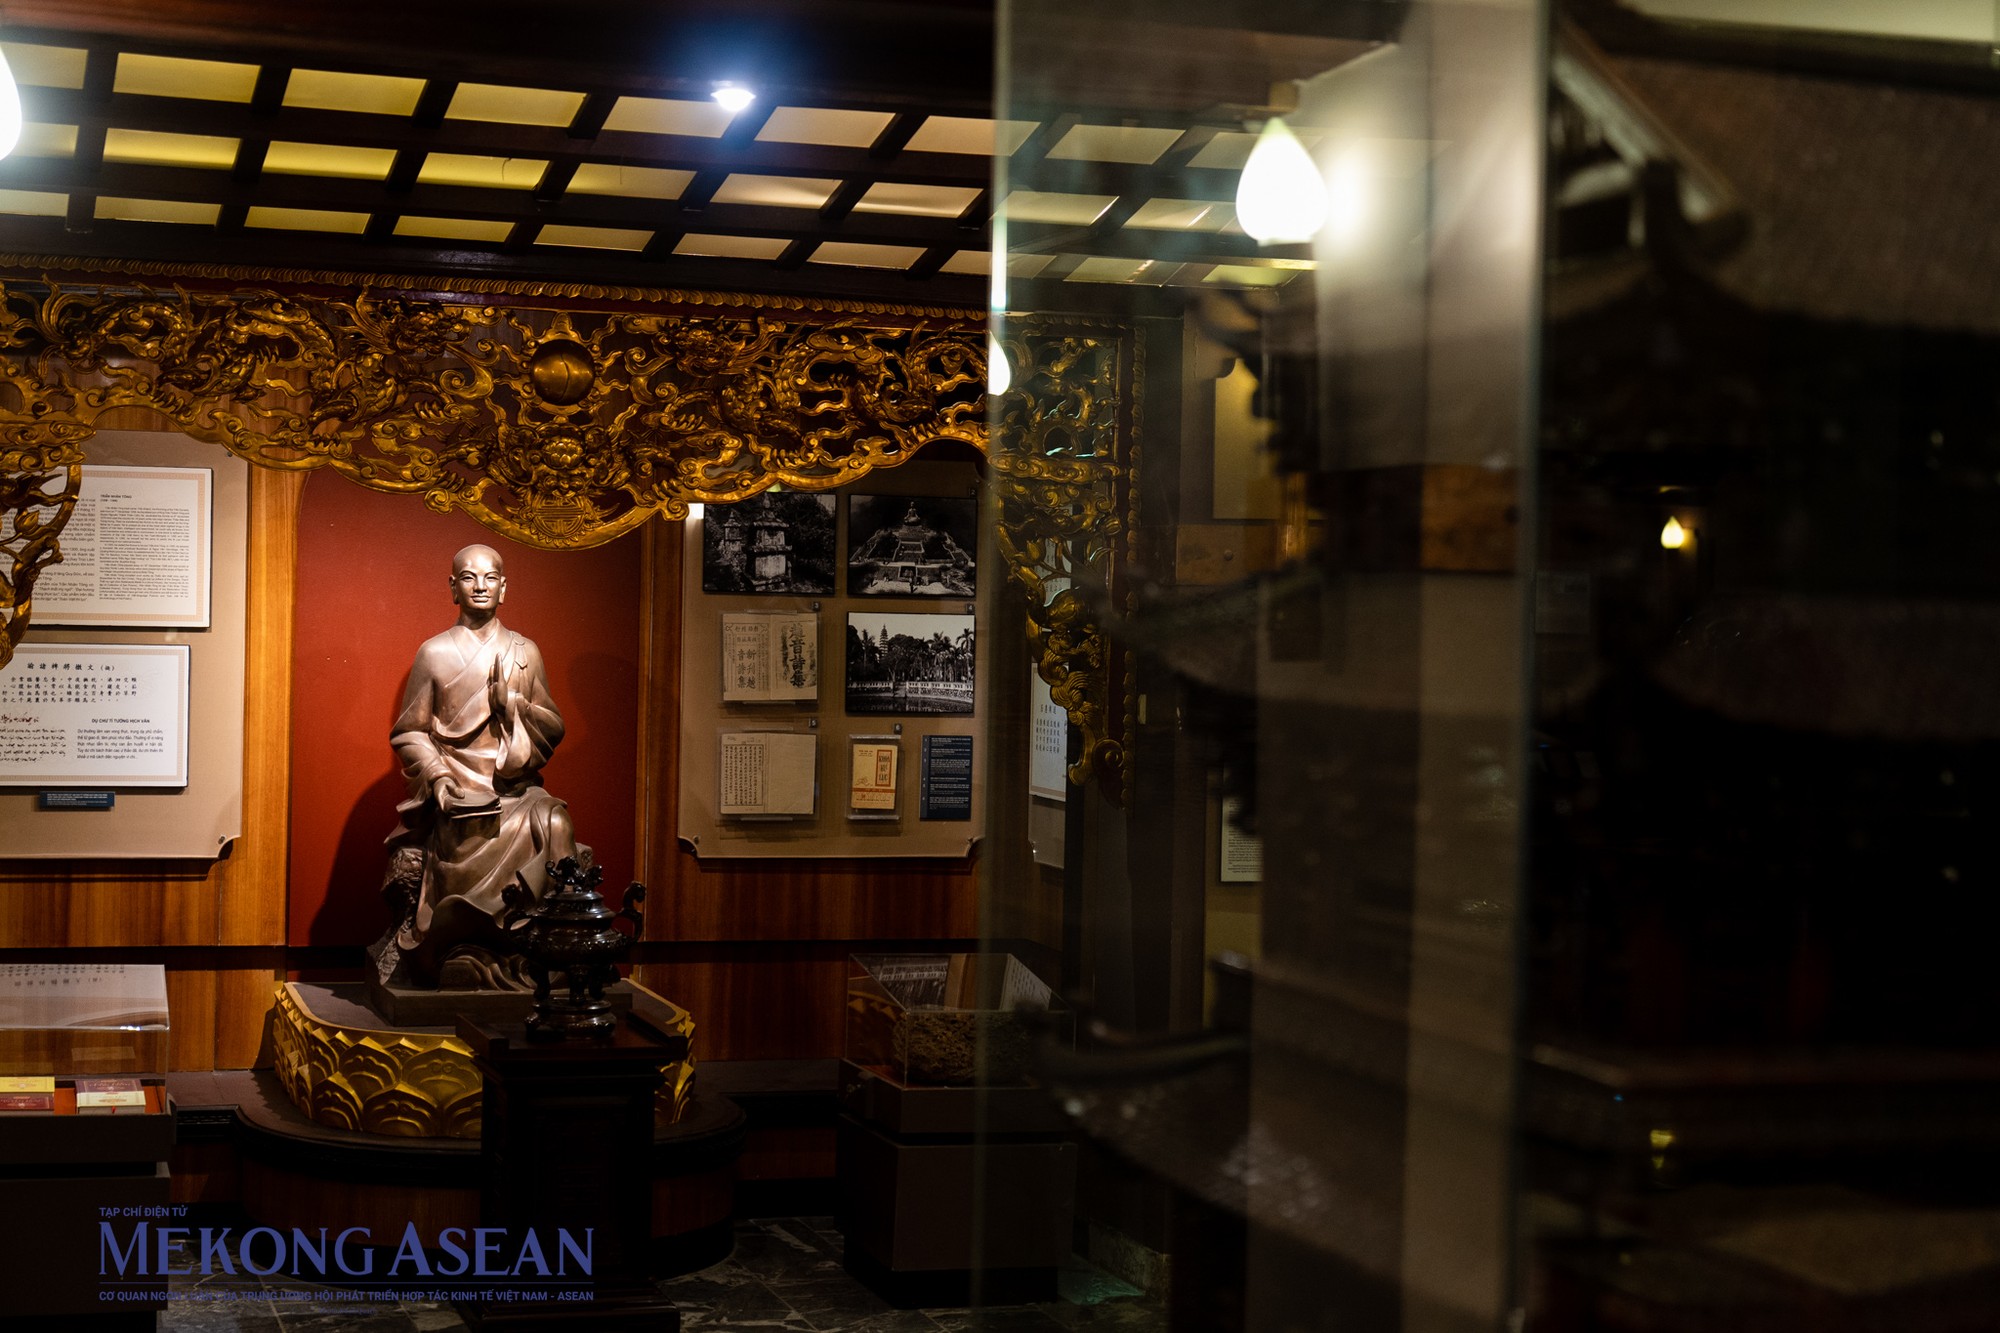 Tôn tượng Vua Trần Nhân Tông thỉnh từ chùa Tiêu Sái (nay là chùa Báo Ân, Gia Lâm, Hà Nội) về đặt tại bảo tàng.